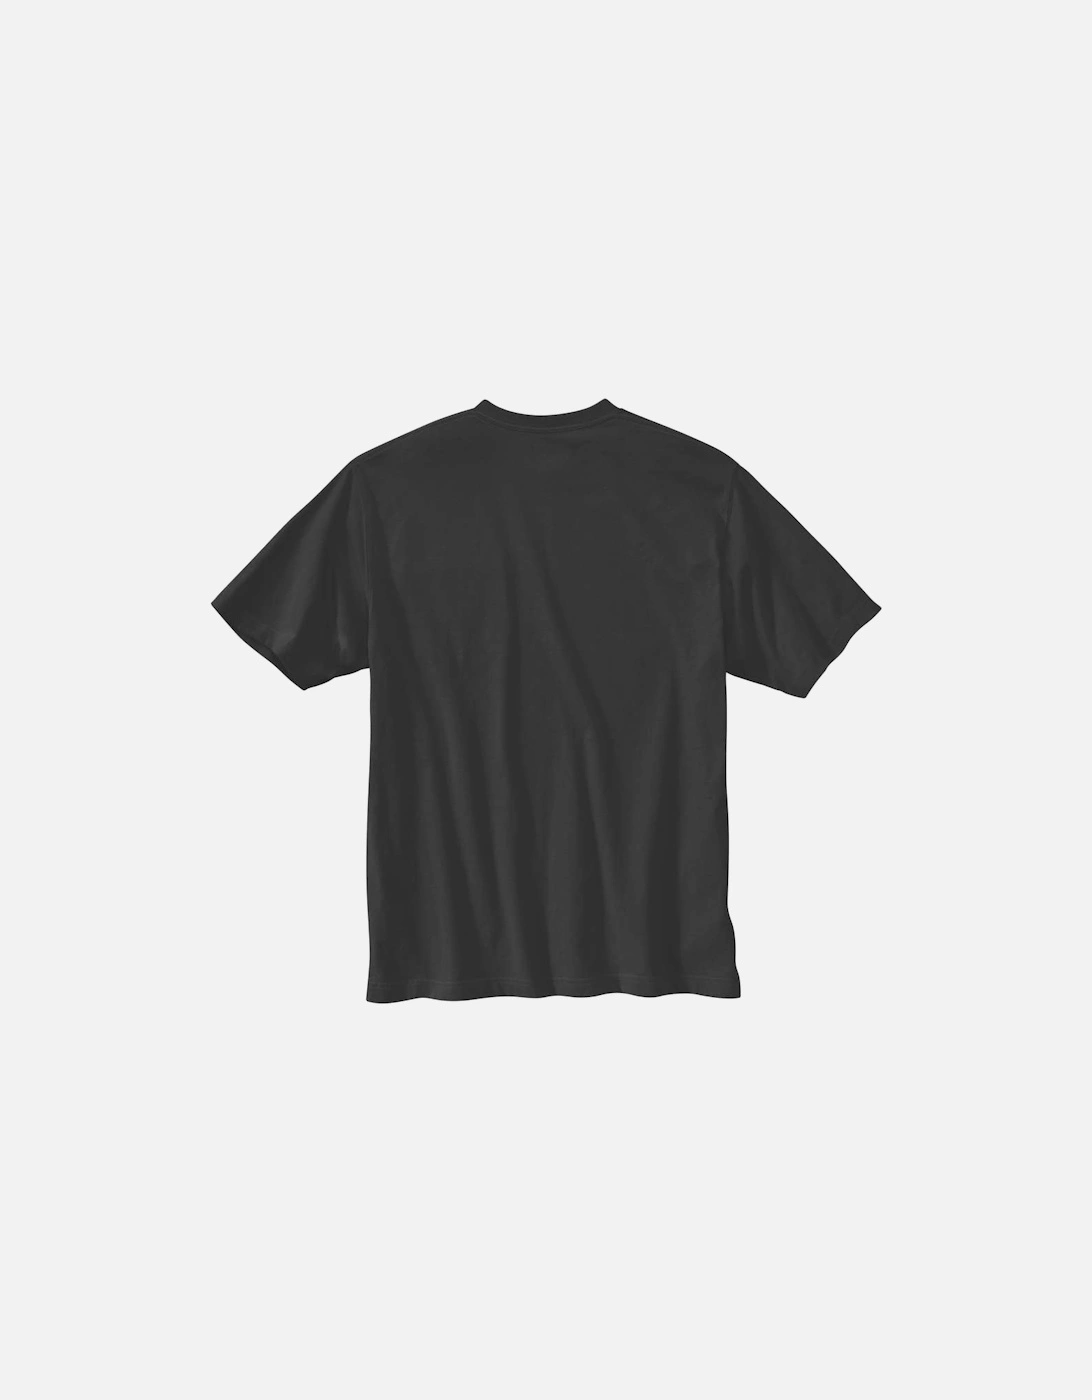 Carhartt Mens Heavyweight Short Sleeve Graphic T Shirt